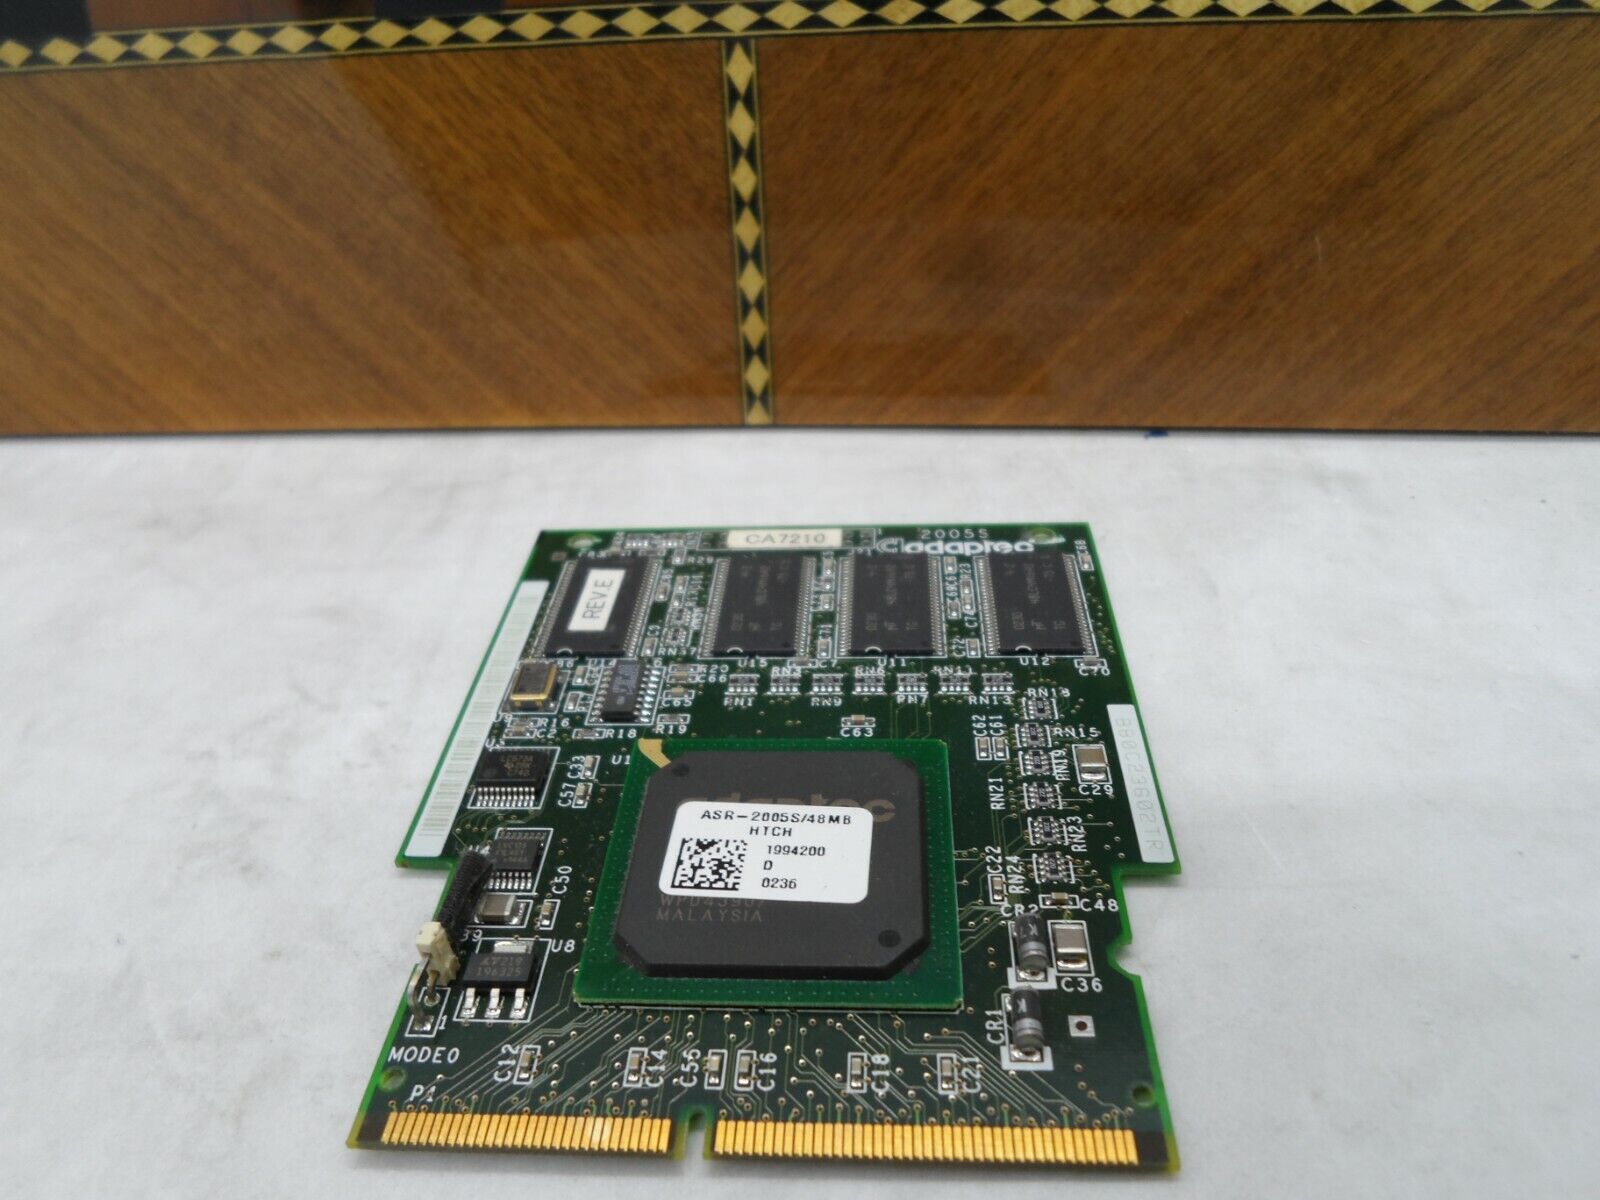 ADAPTEC ASR-2005S/48 ULTRA RAID PCI CONTROLLER CARD REV.E Small PCI